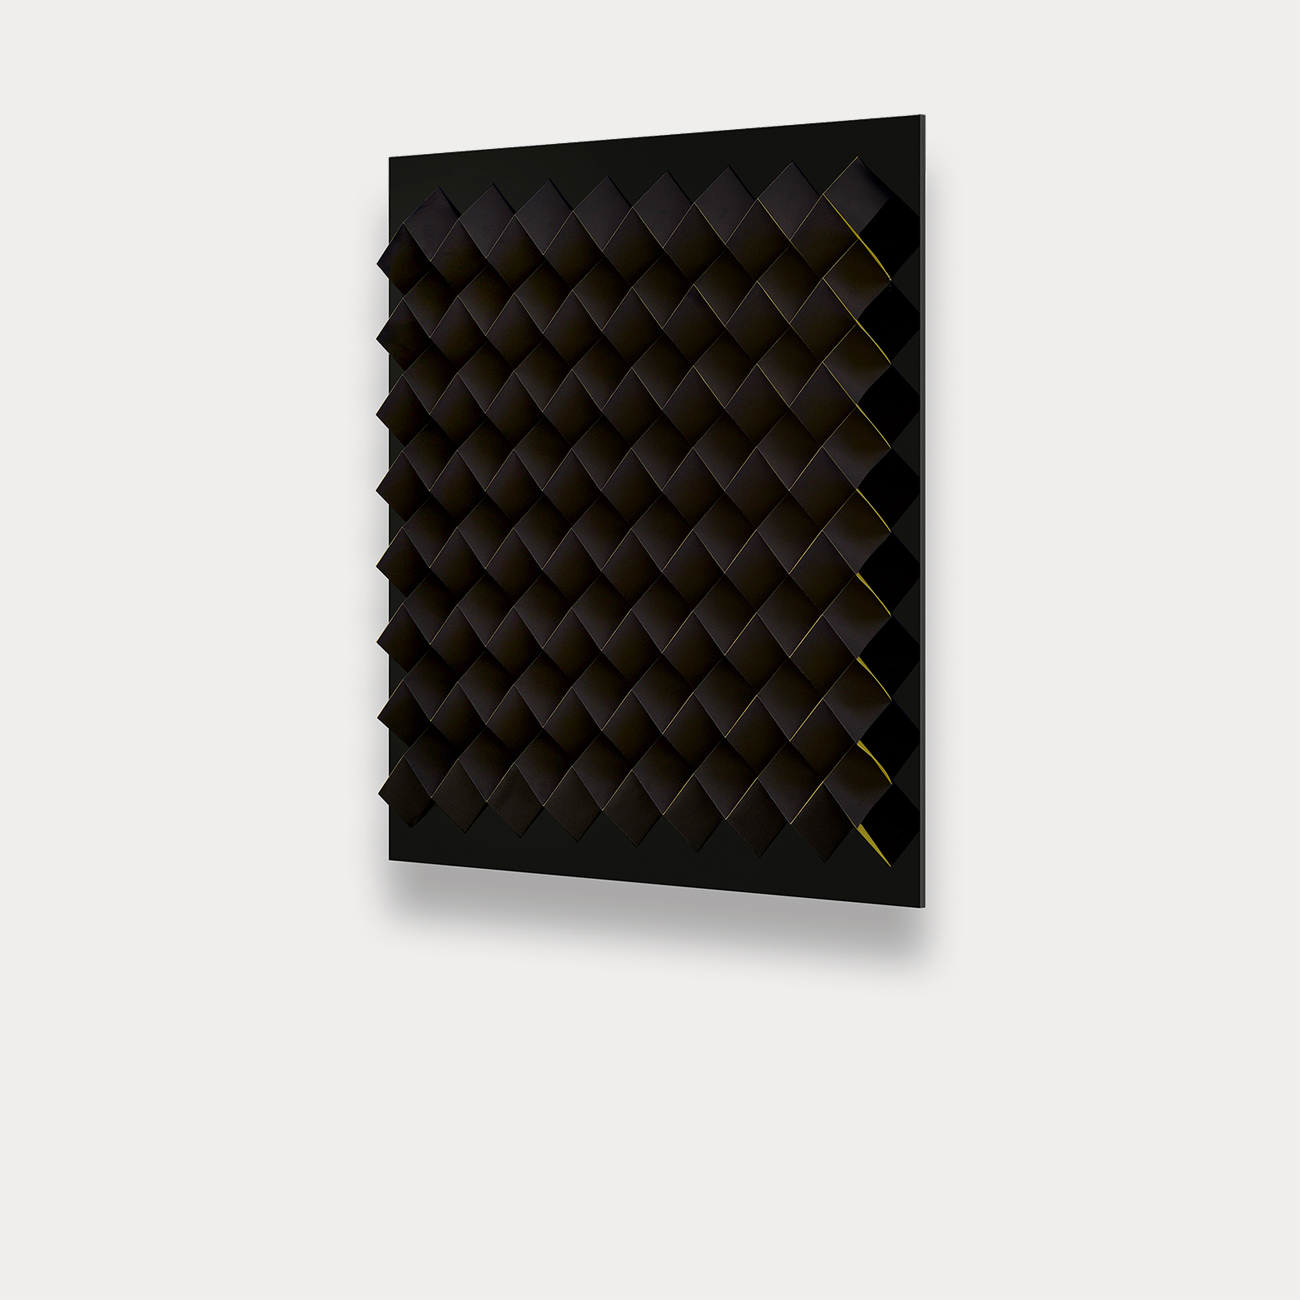 Foldart Papferfold schwarz-gelb. Basis Acryl, schwarz. Seitenansicht